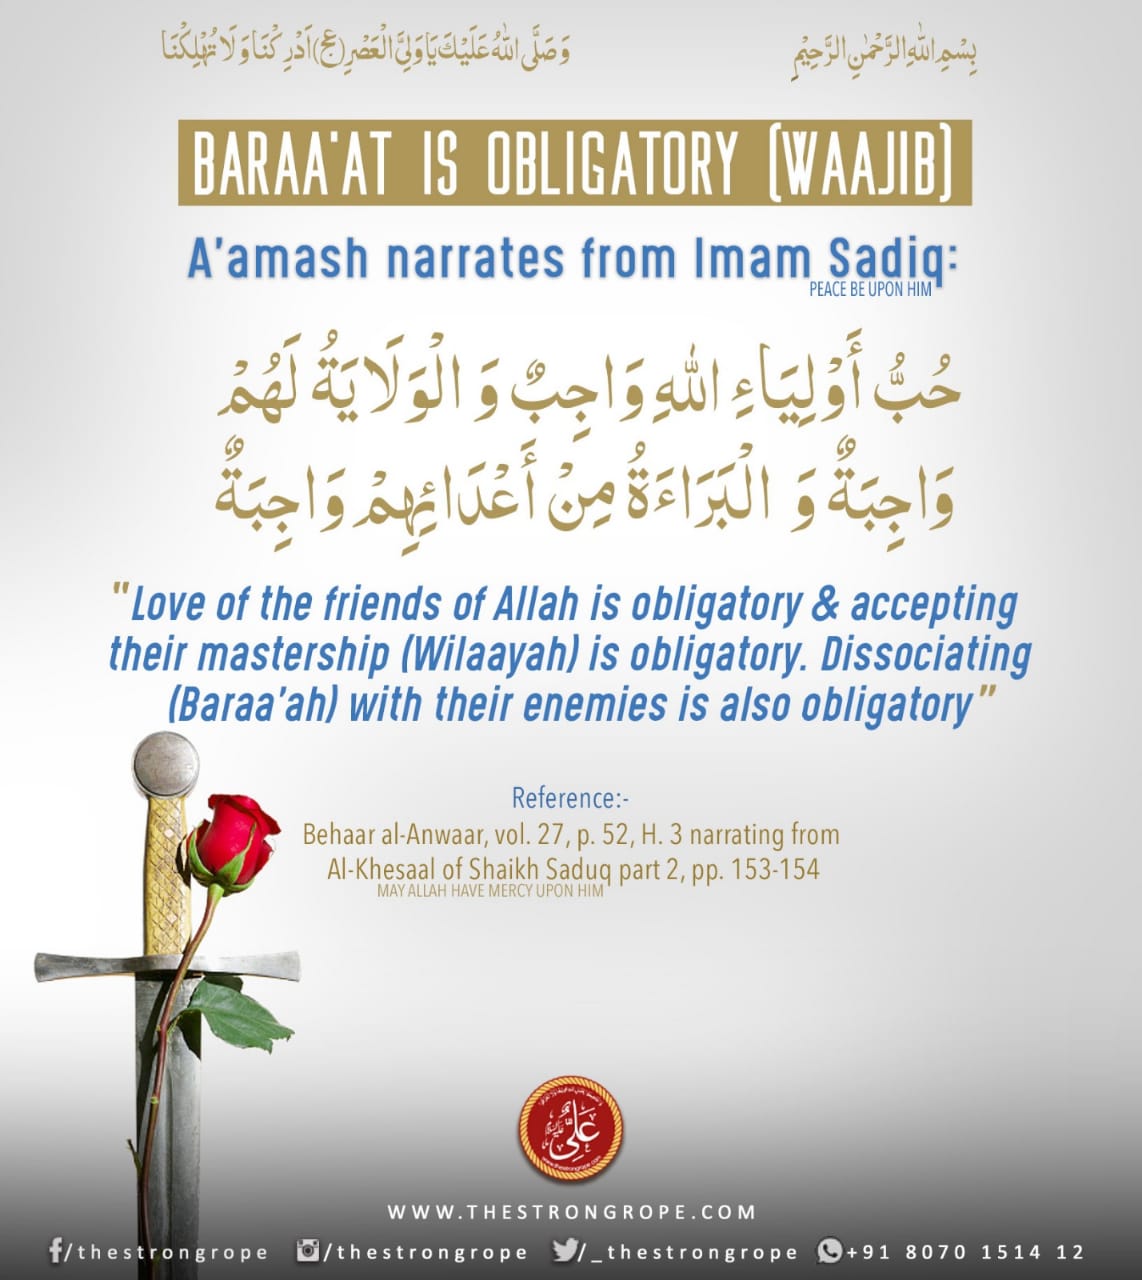 Baraa’at is Obligatory (Waajib)